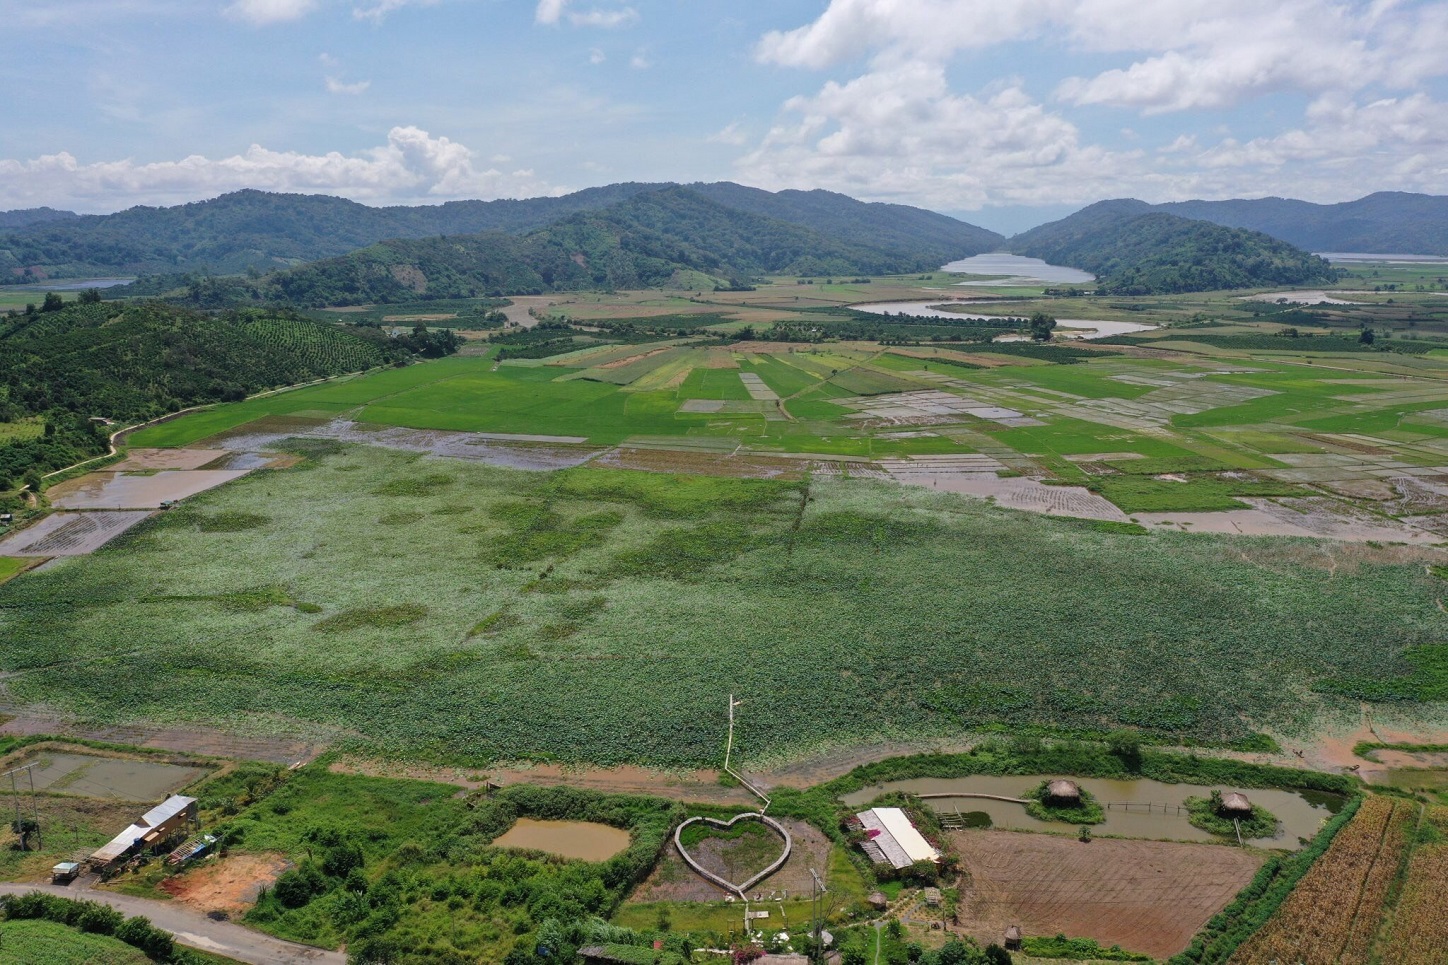 Đầm sen là một hồ nước tự nhiên hình thành cách đây hàng trăm nghìn năm.  nằm trong Công viên địa chất toàn cầu UNESCO Đắk Nông. Người dân xã Nâm N'đir cho biết, khoảng hơn 10 năm trước, người dân địa phương đã đưa sen về trồng, từ đó hình thành một trong những đầm sen lớn nhất tỉnh Đắk Nông.